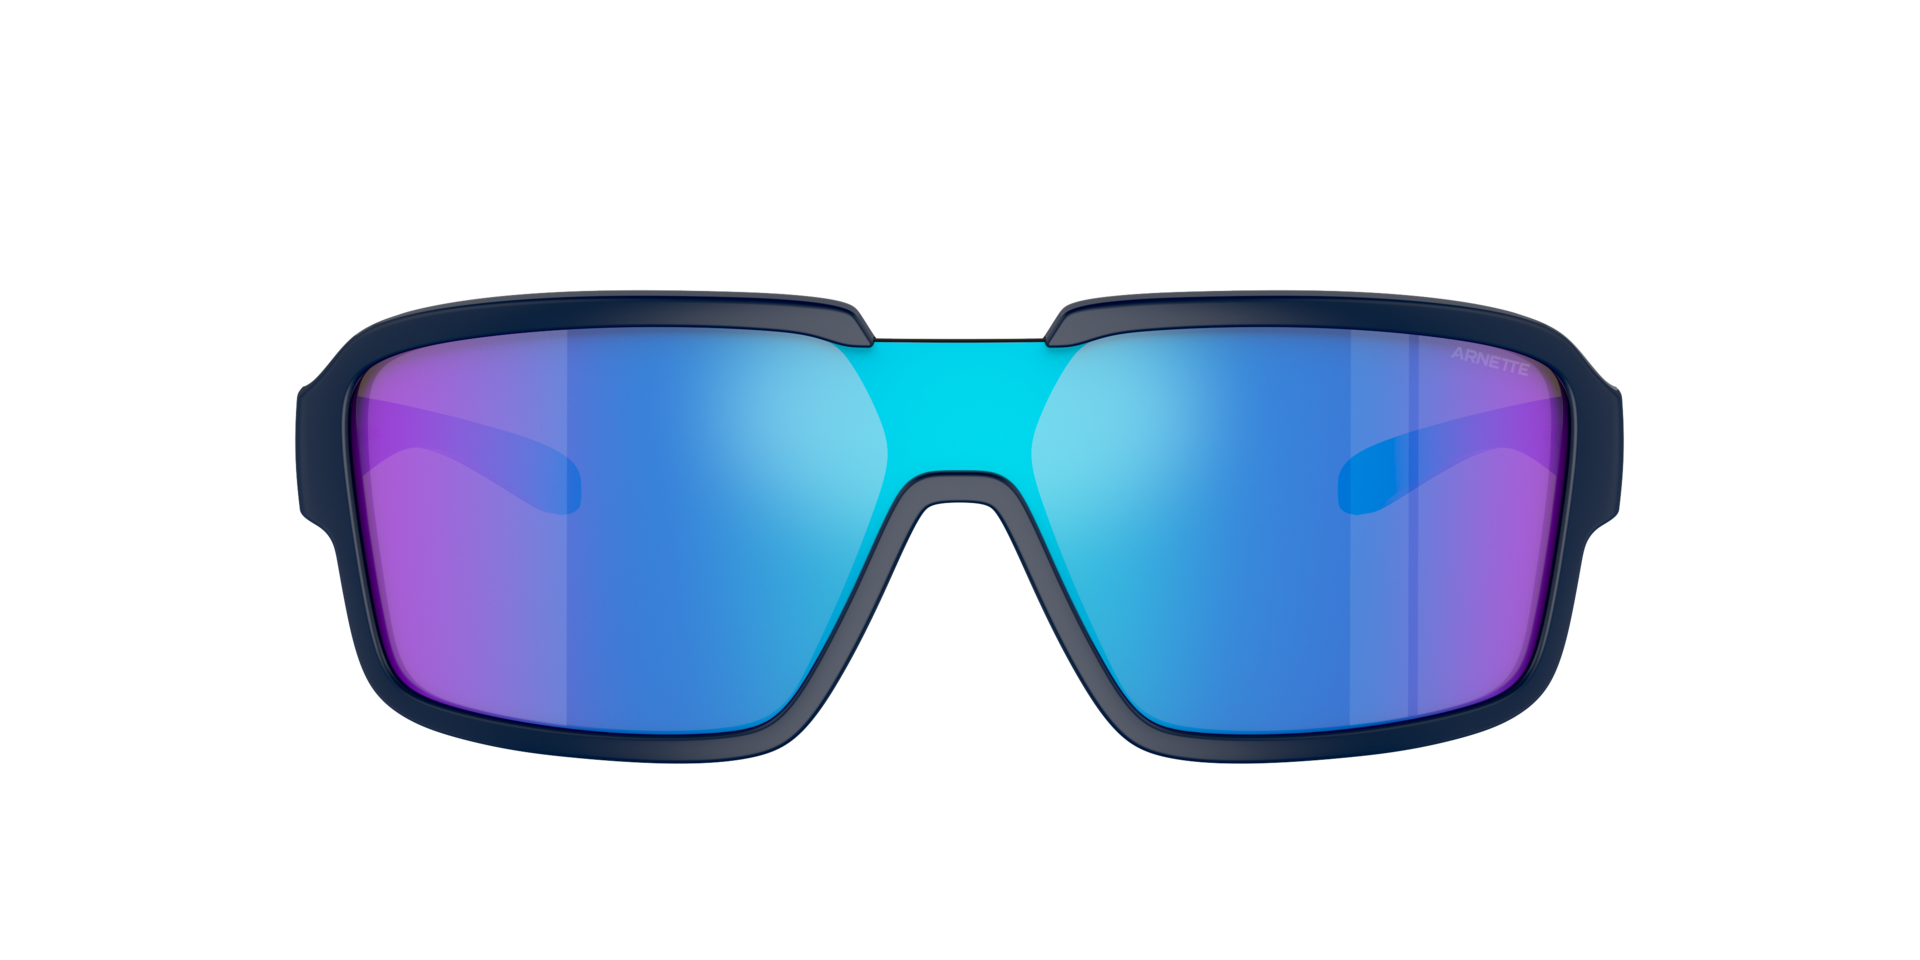 Das Bild zeigt die Sonnenbrille AN4335 275425 von der Marke Arnette in schwarz/blau.